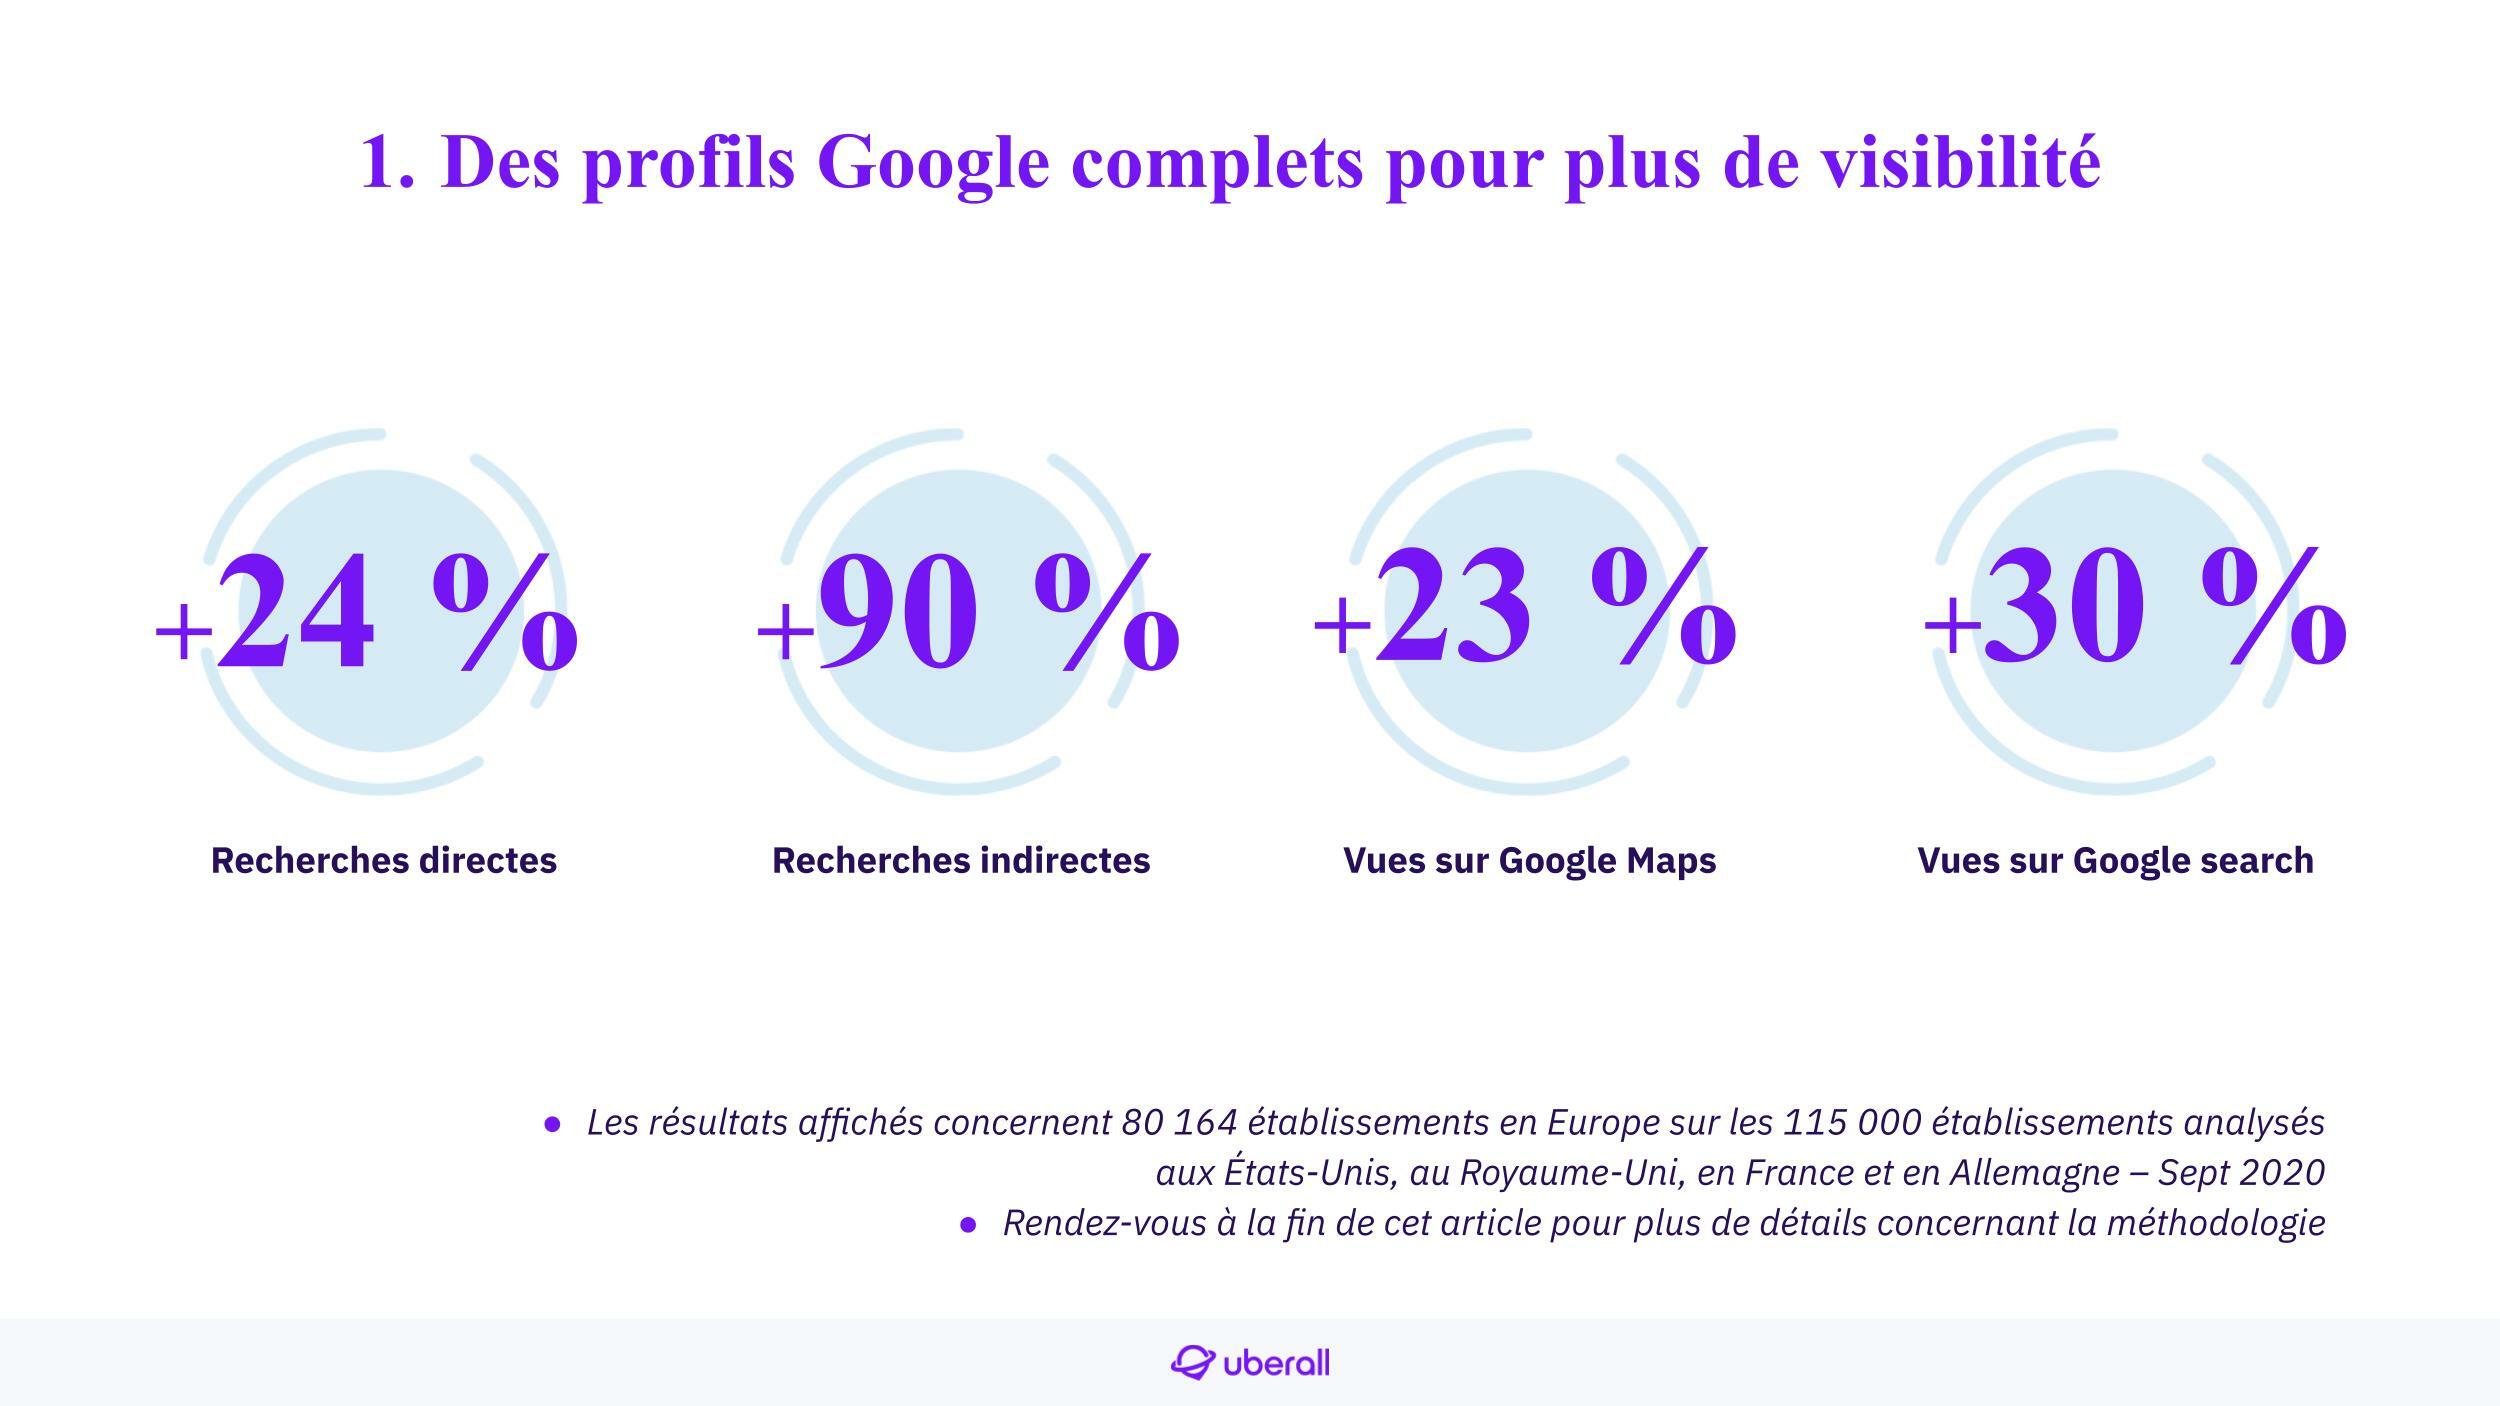 Pourcentage d'augmentation de la visibilité en fonction du niveau de complétude des profils Google